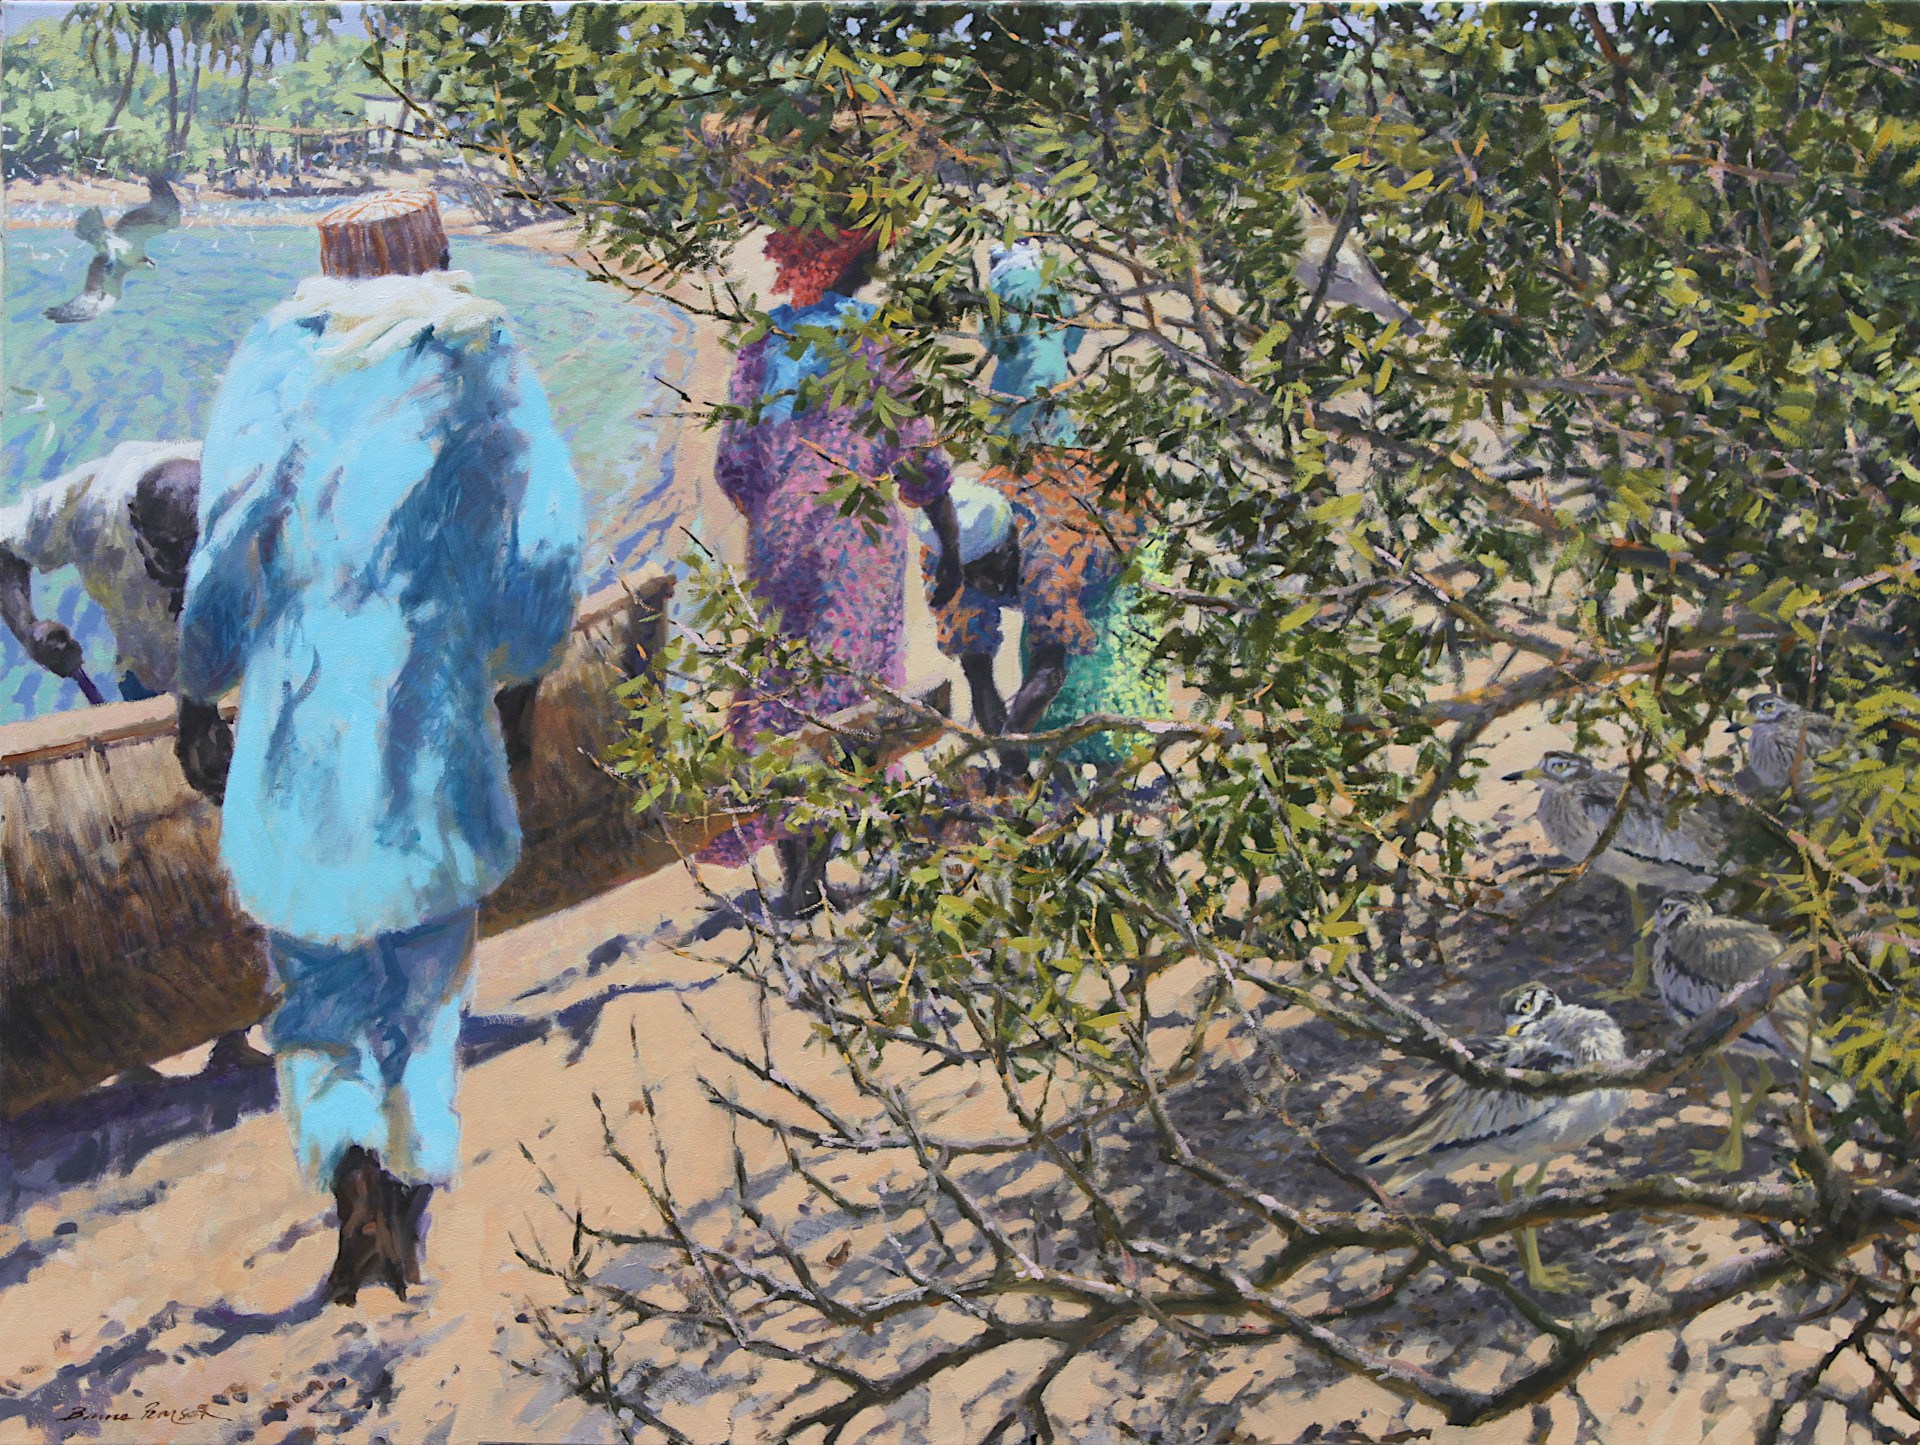 Senegal Shoreline.  Oil on canvas 92cm x 122cm